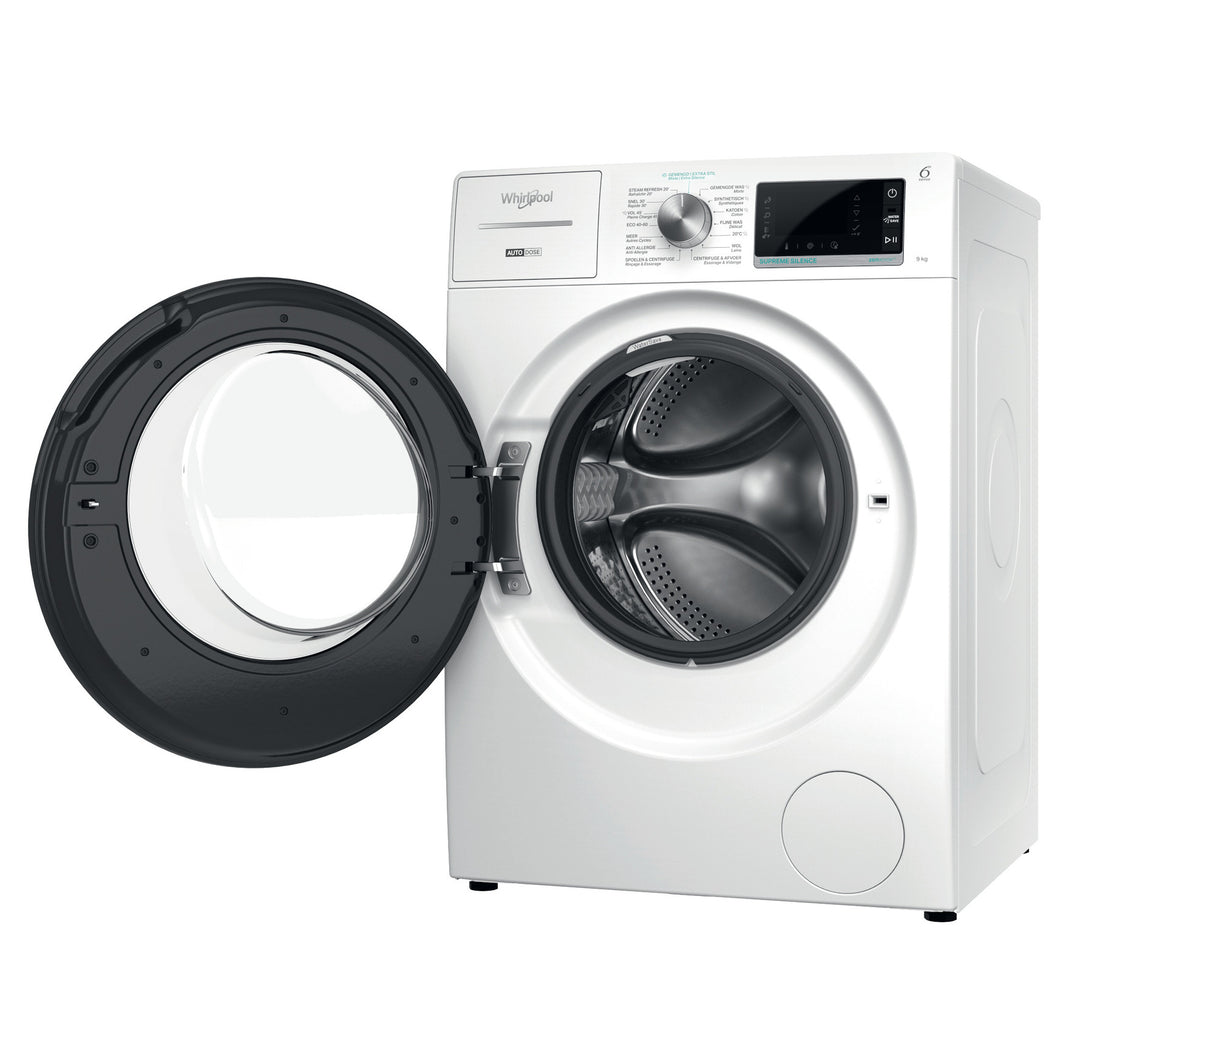 Whirlpool W8 W946WB BE wasmachine